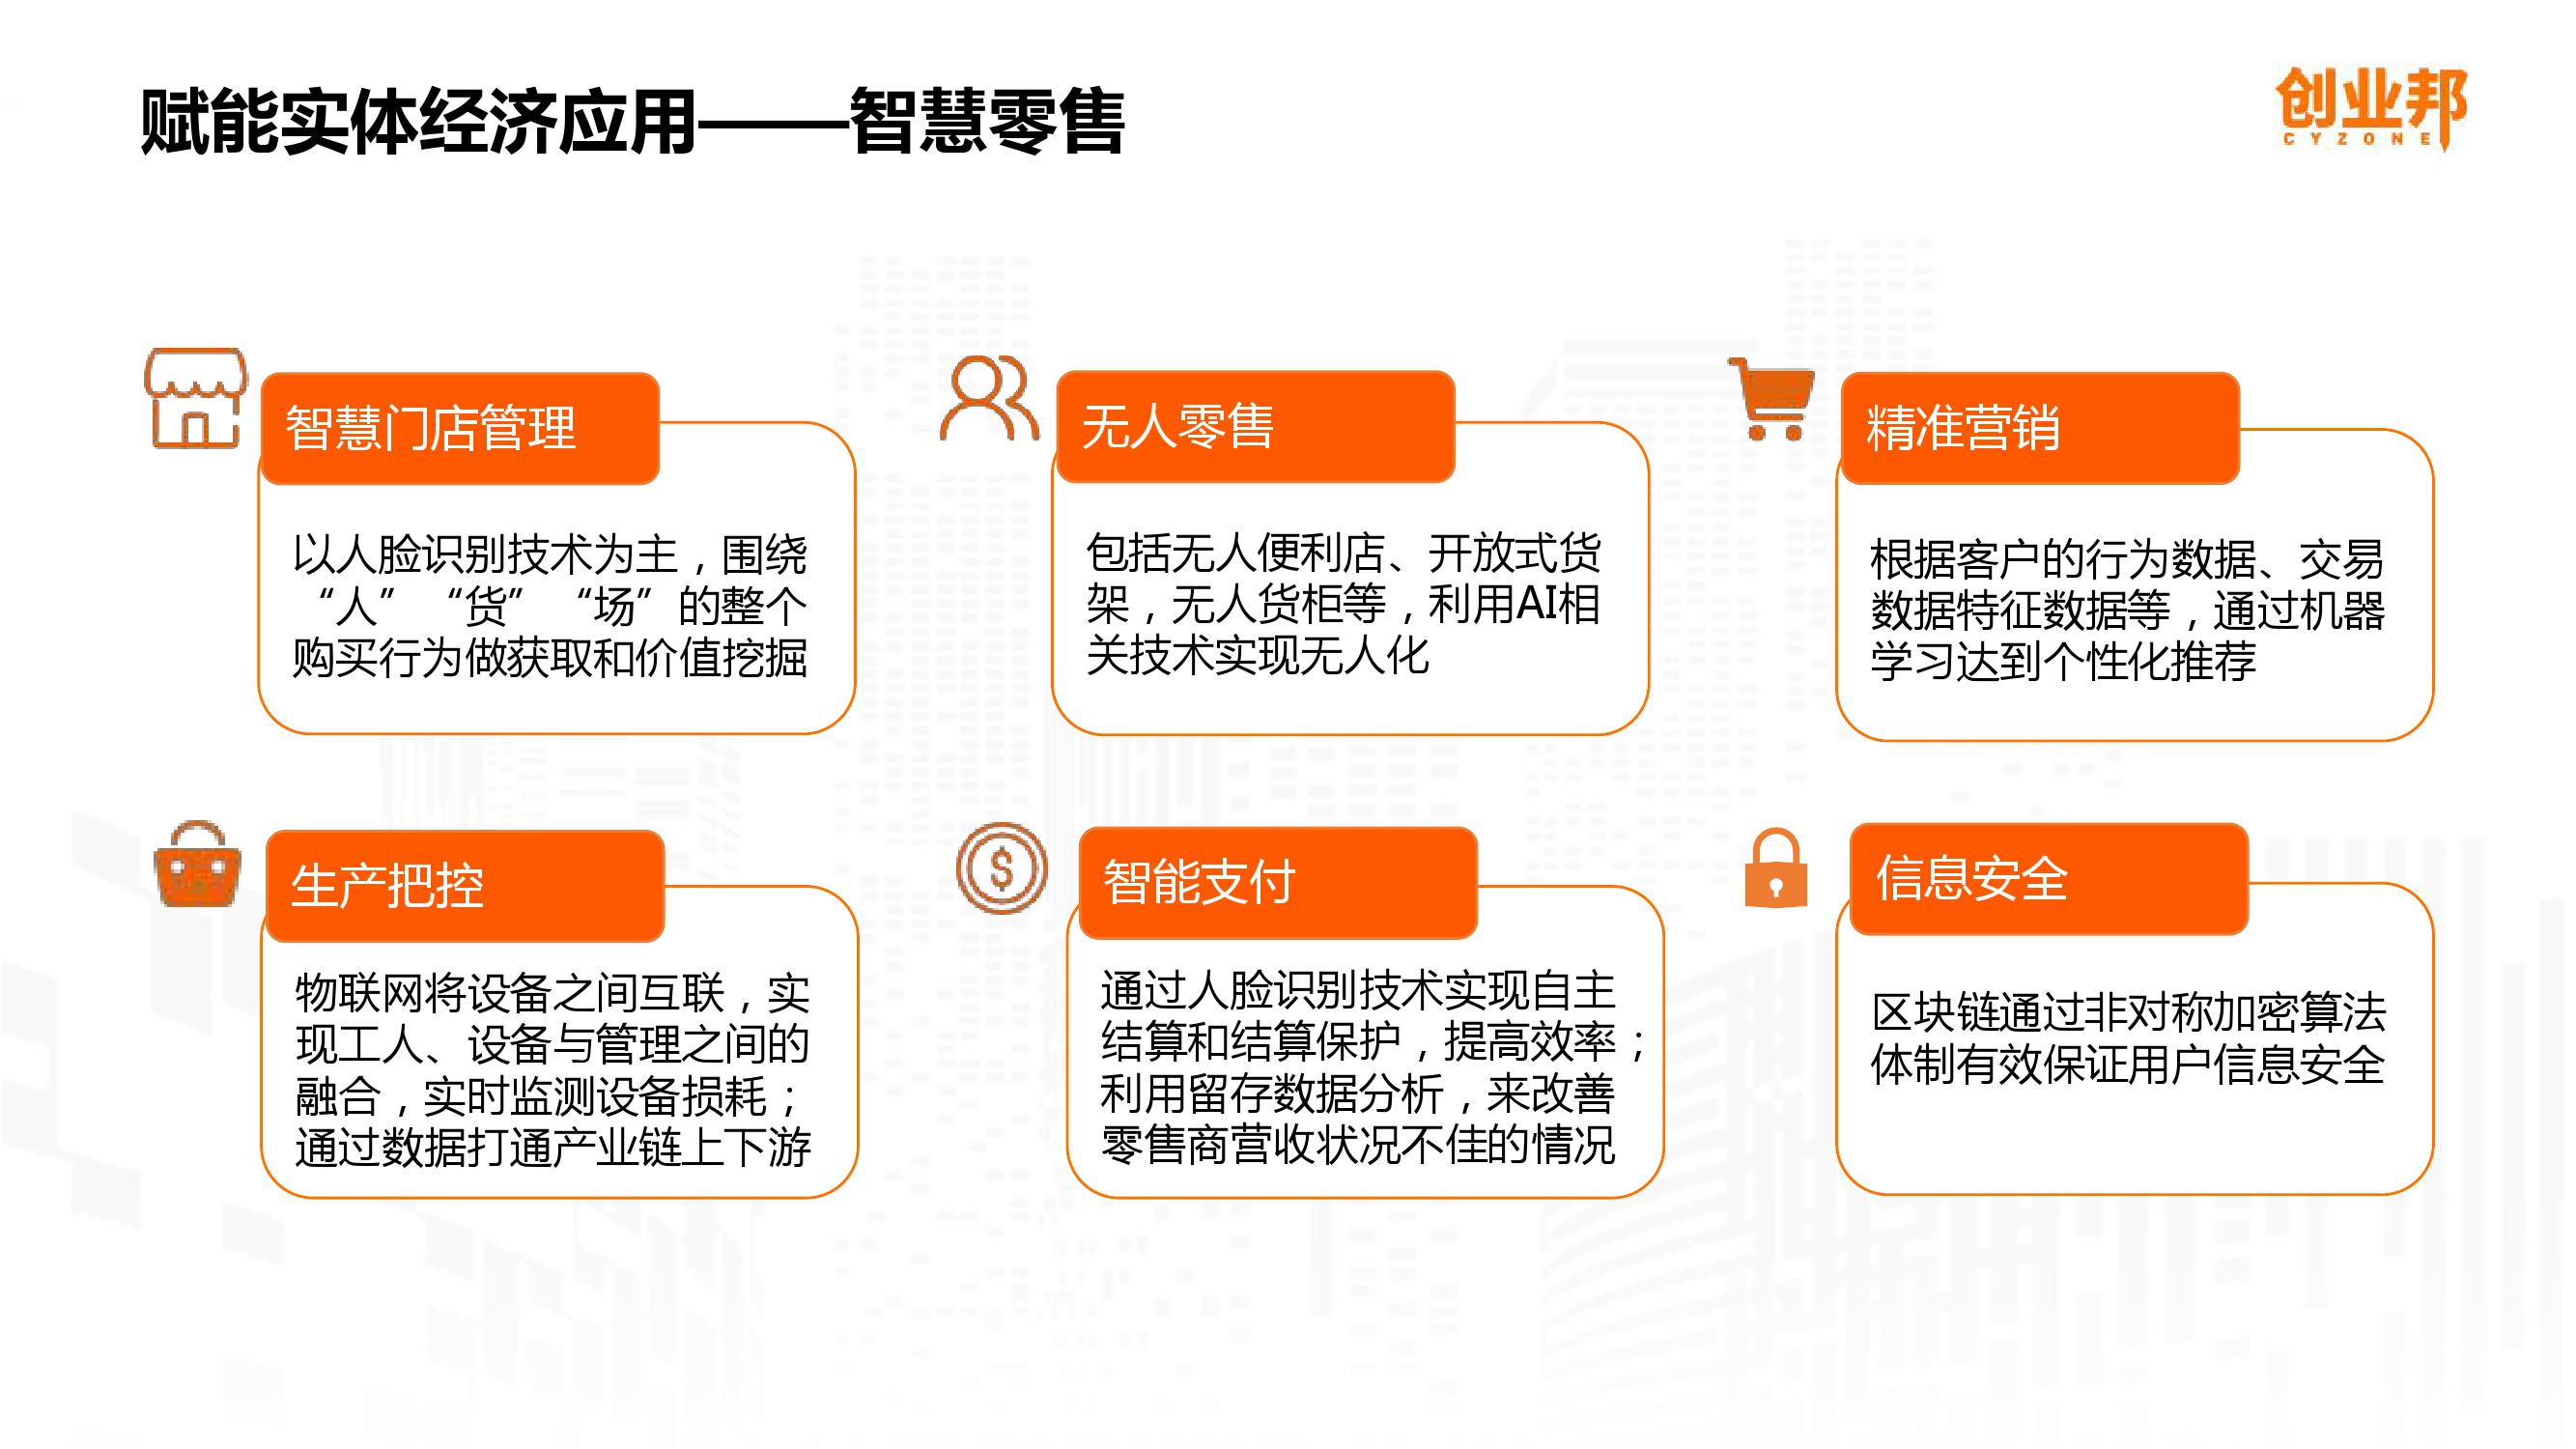 2019中国企业数字化智能化研究报告_000029-3